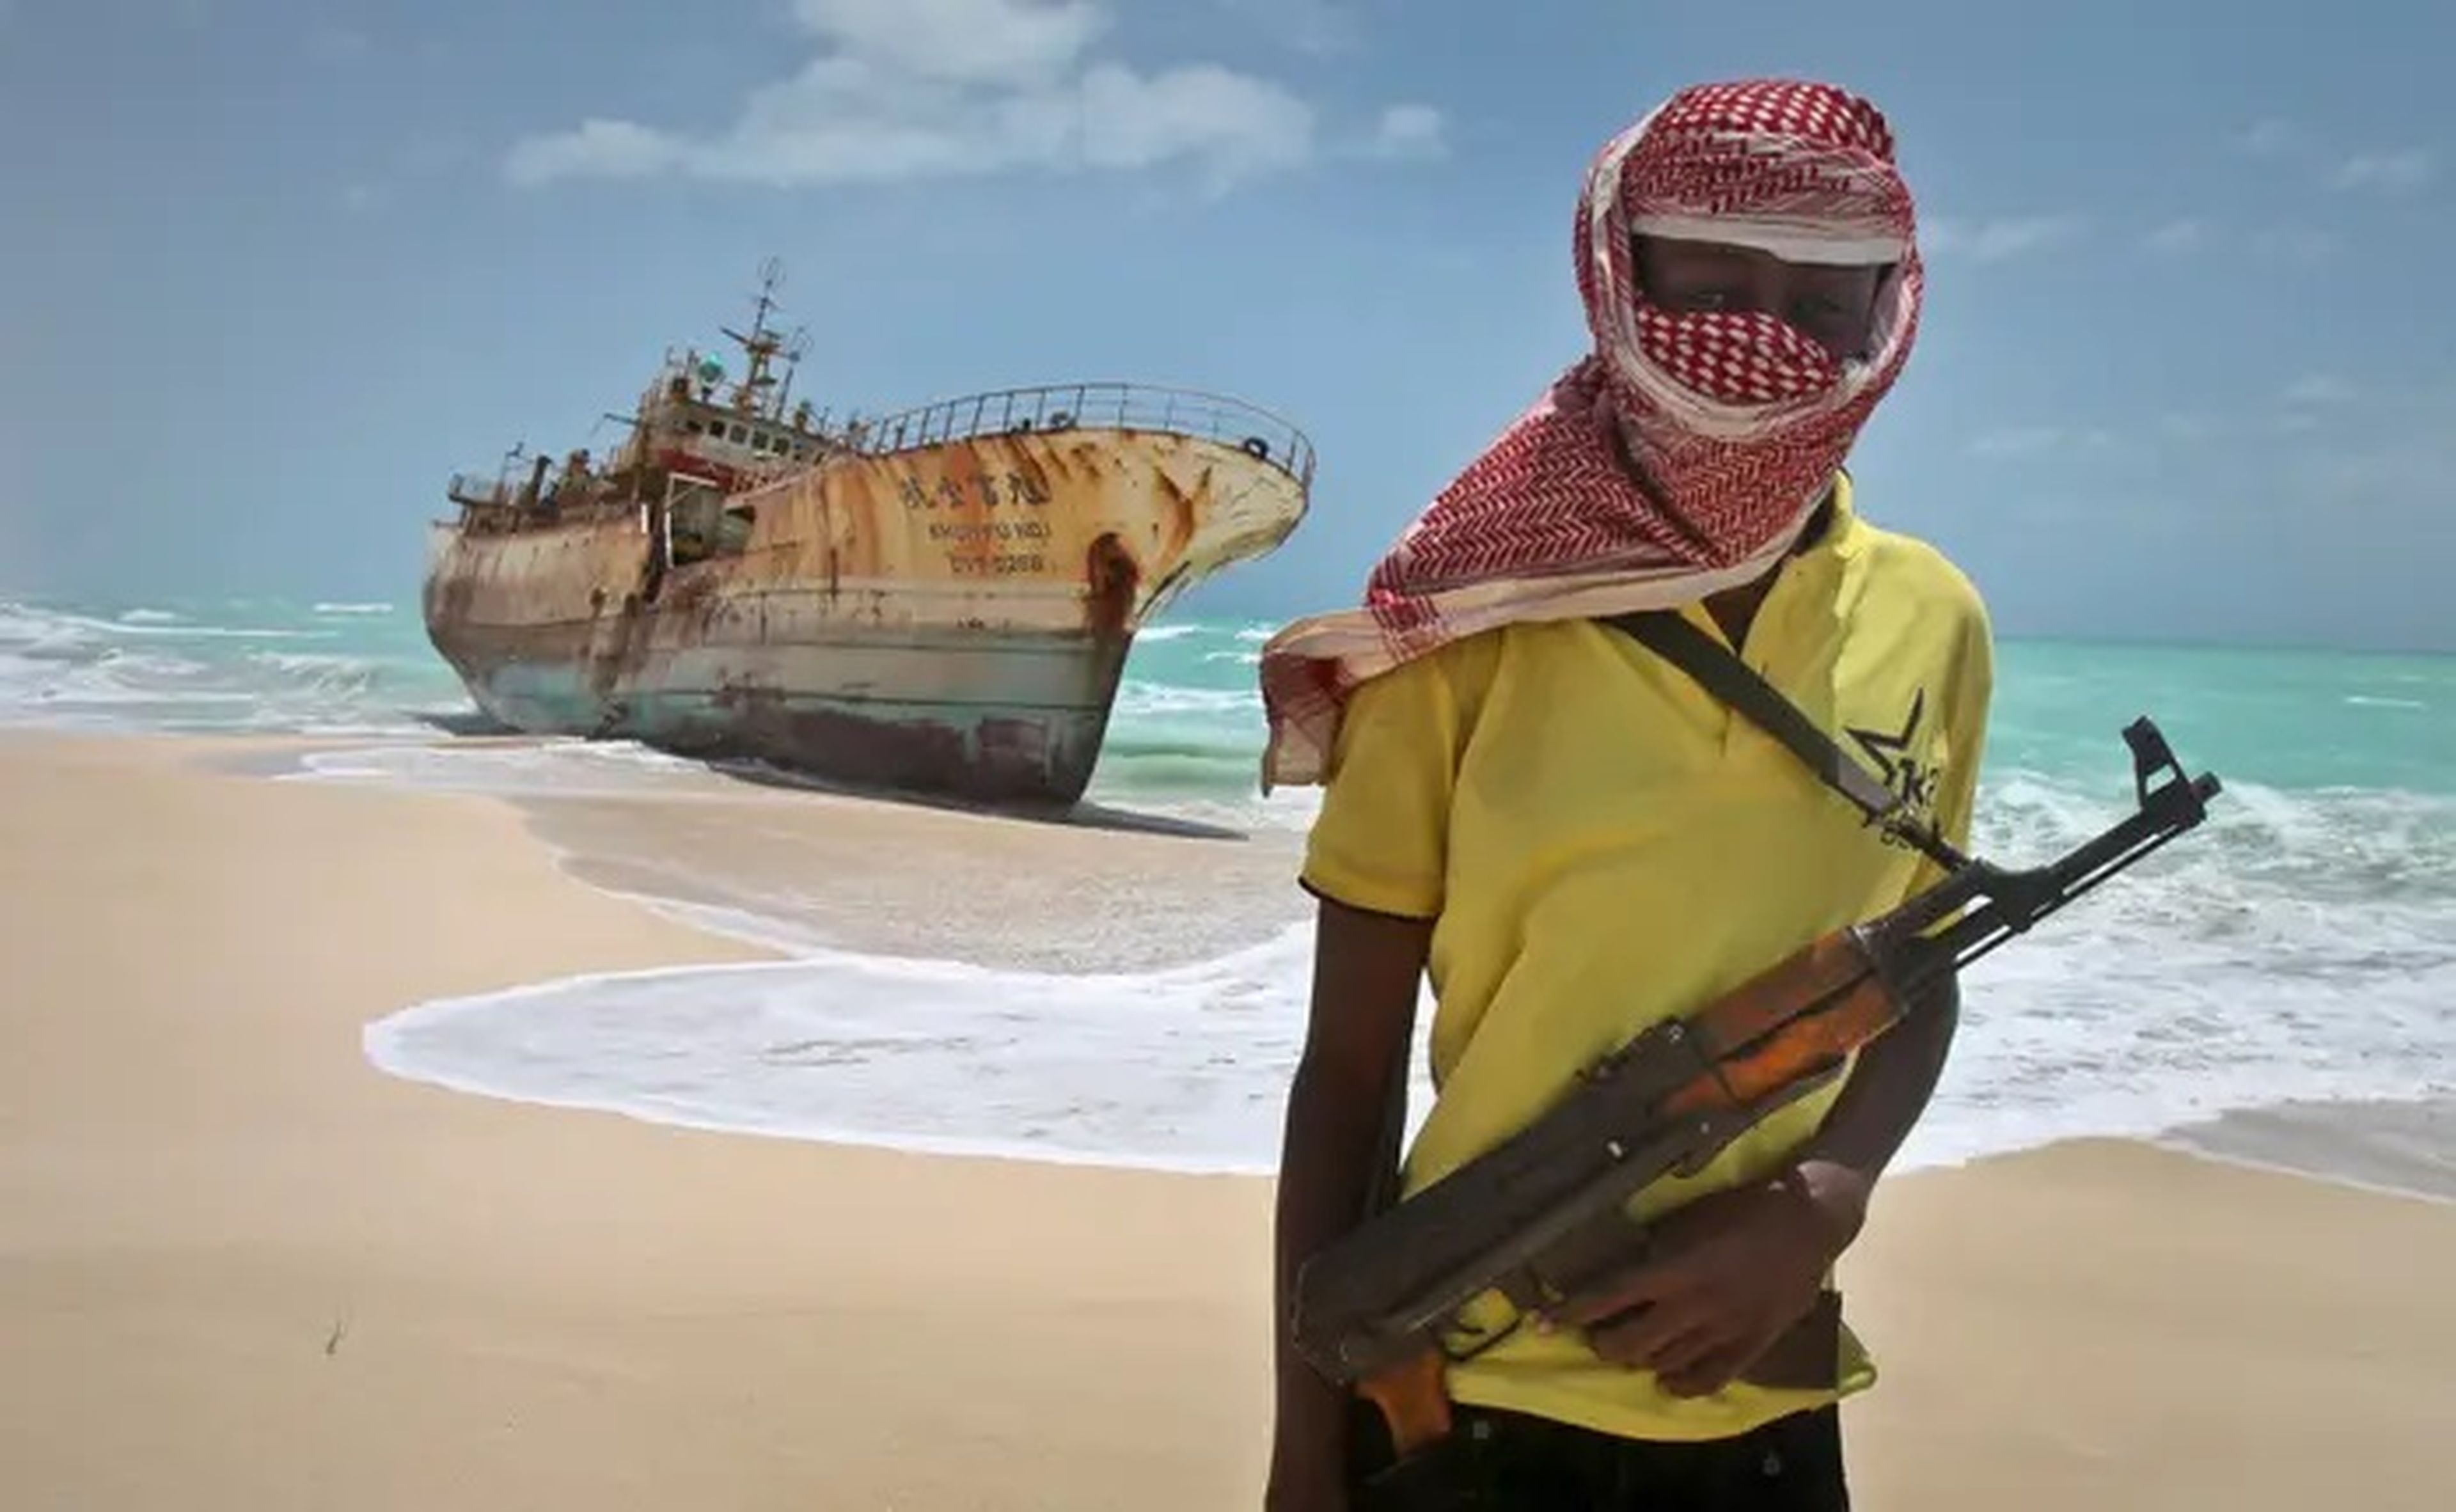 En 2022 se registraron 115 incidentes de piratería y robo a mano armada contra buques, según la Oficina Marítima Internacional. La IMB registró 445 ataques en 2010, 219 de ellos en torno a Somalia.